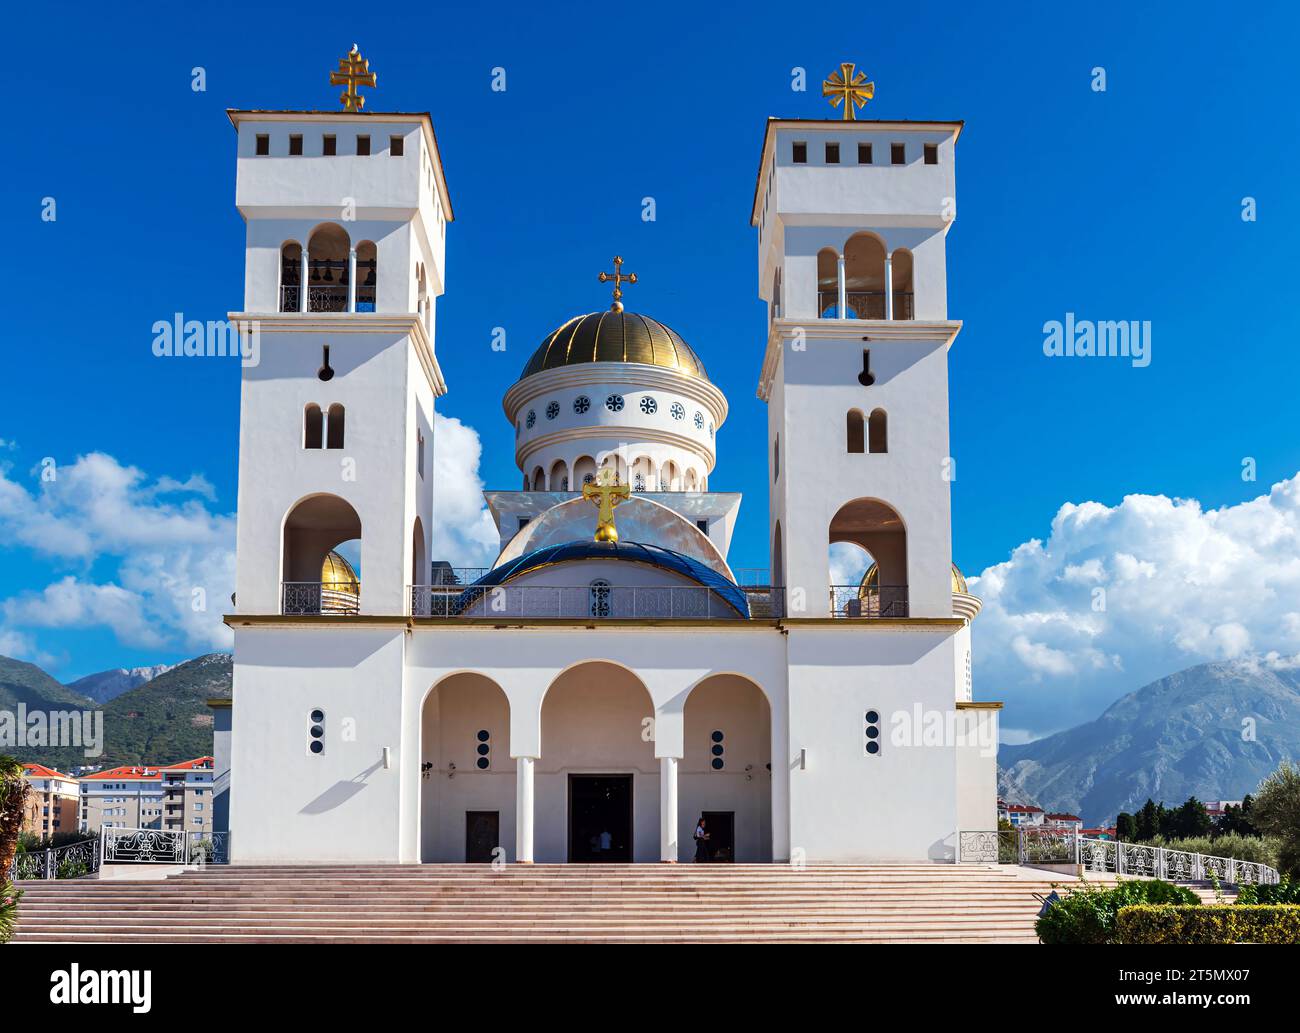 L'église de St. Jovan Vladimir est une église orthodoxe serbe située à Bar, au Monténégro. Il a été construit entre 2006 et 2016 Banque D'Images